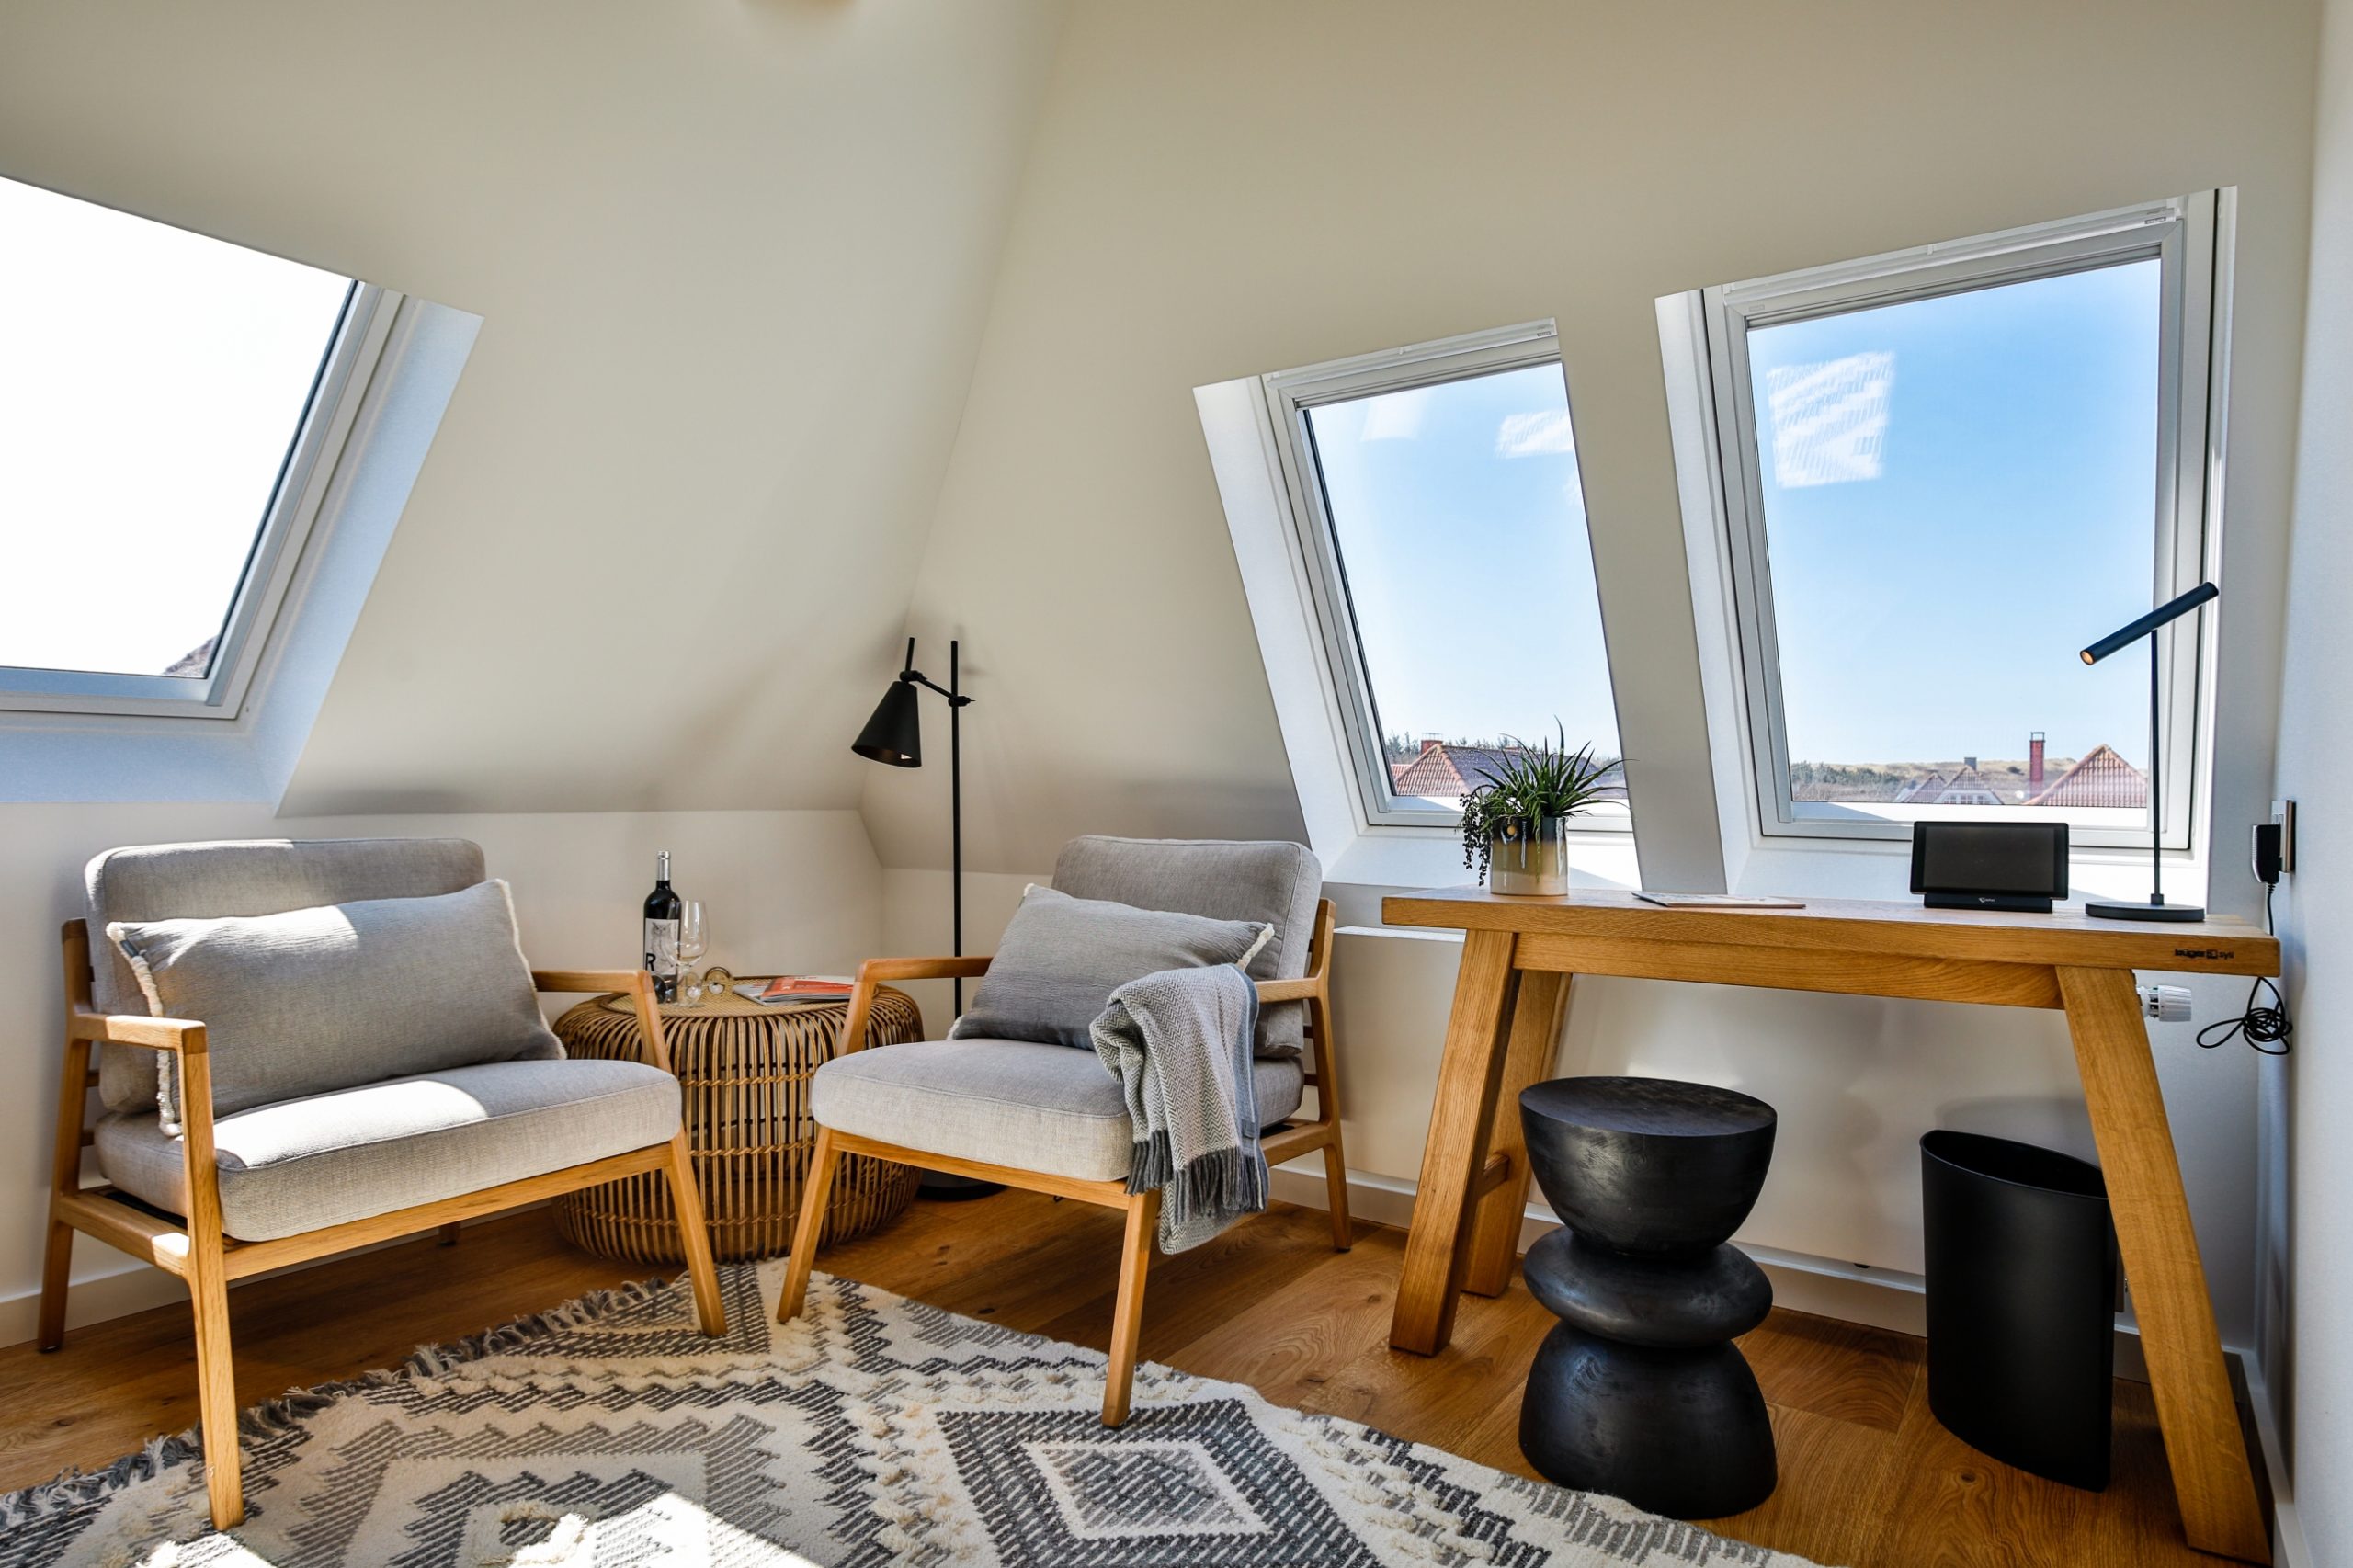 Doppelzimmer mit großem Doppelbett im Hotel Landhaus Sylter Hahn in Westerland auf Sylt.